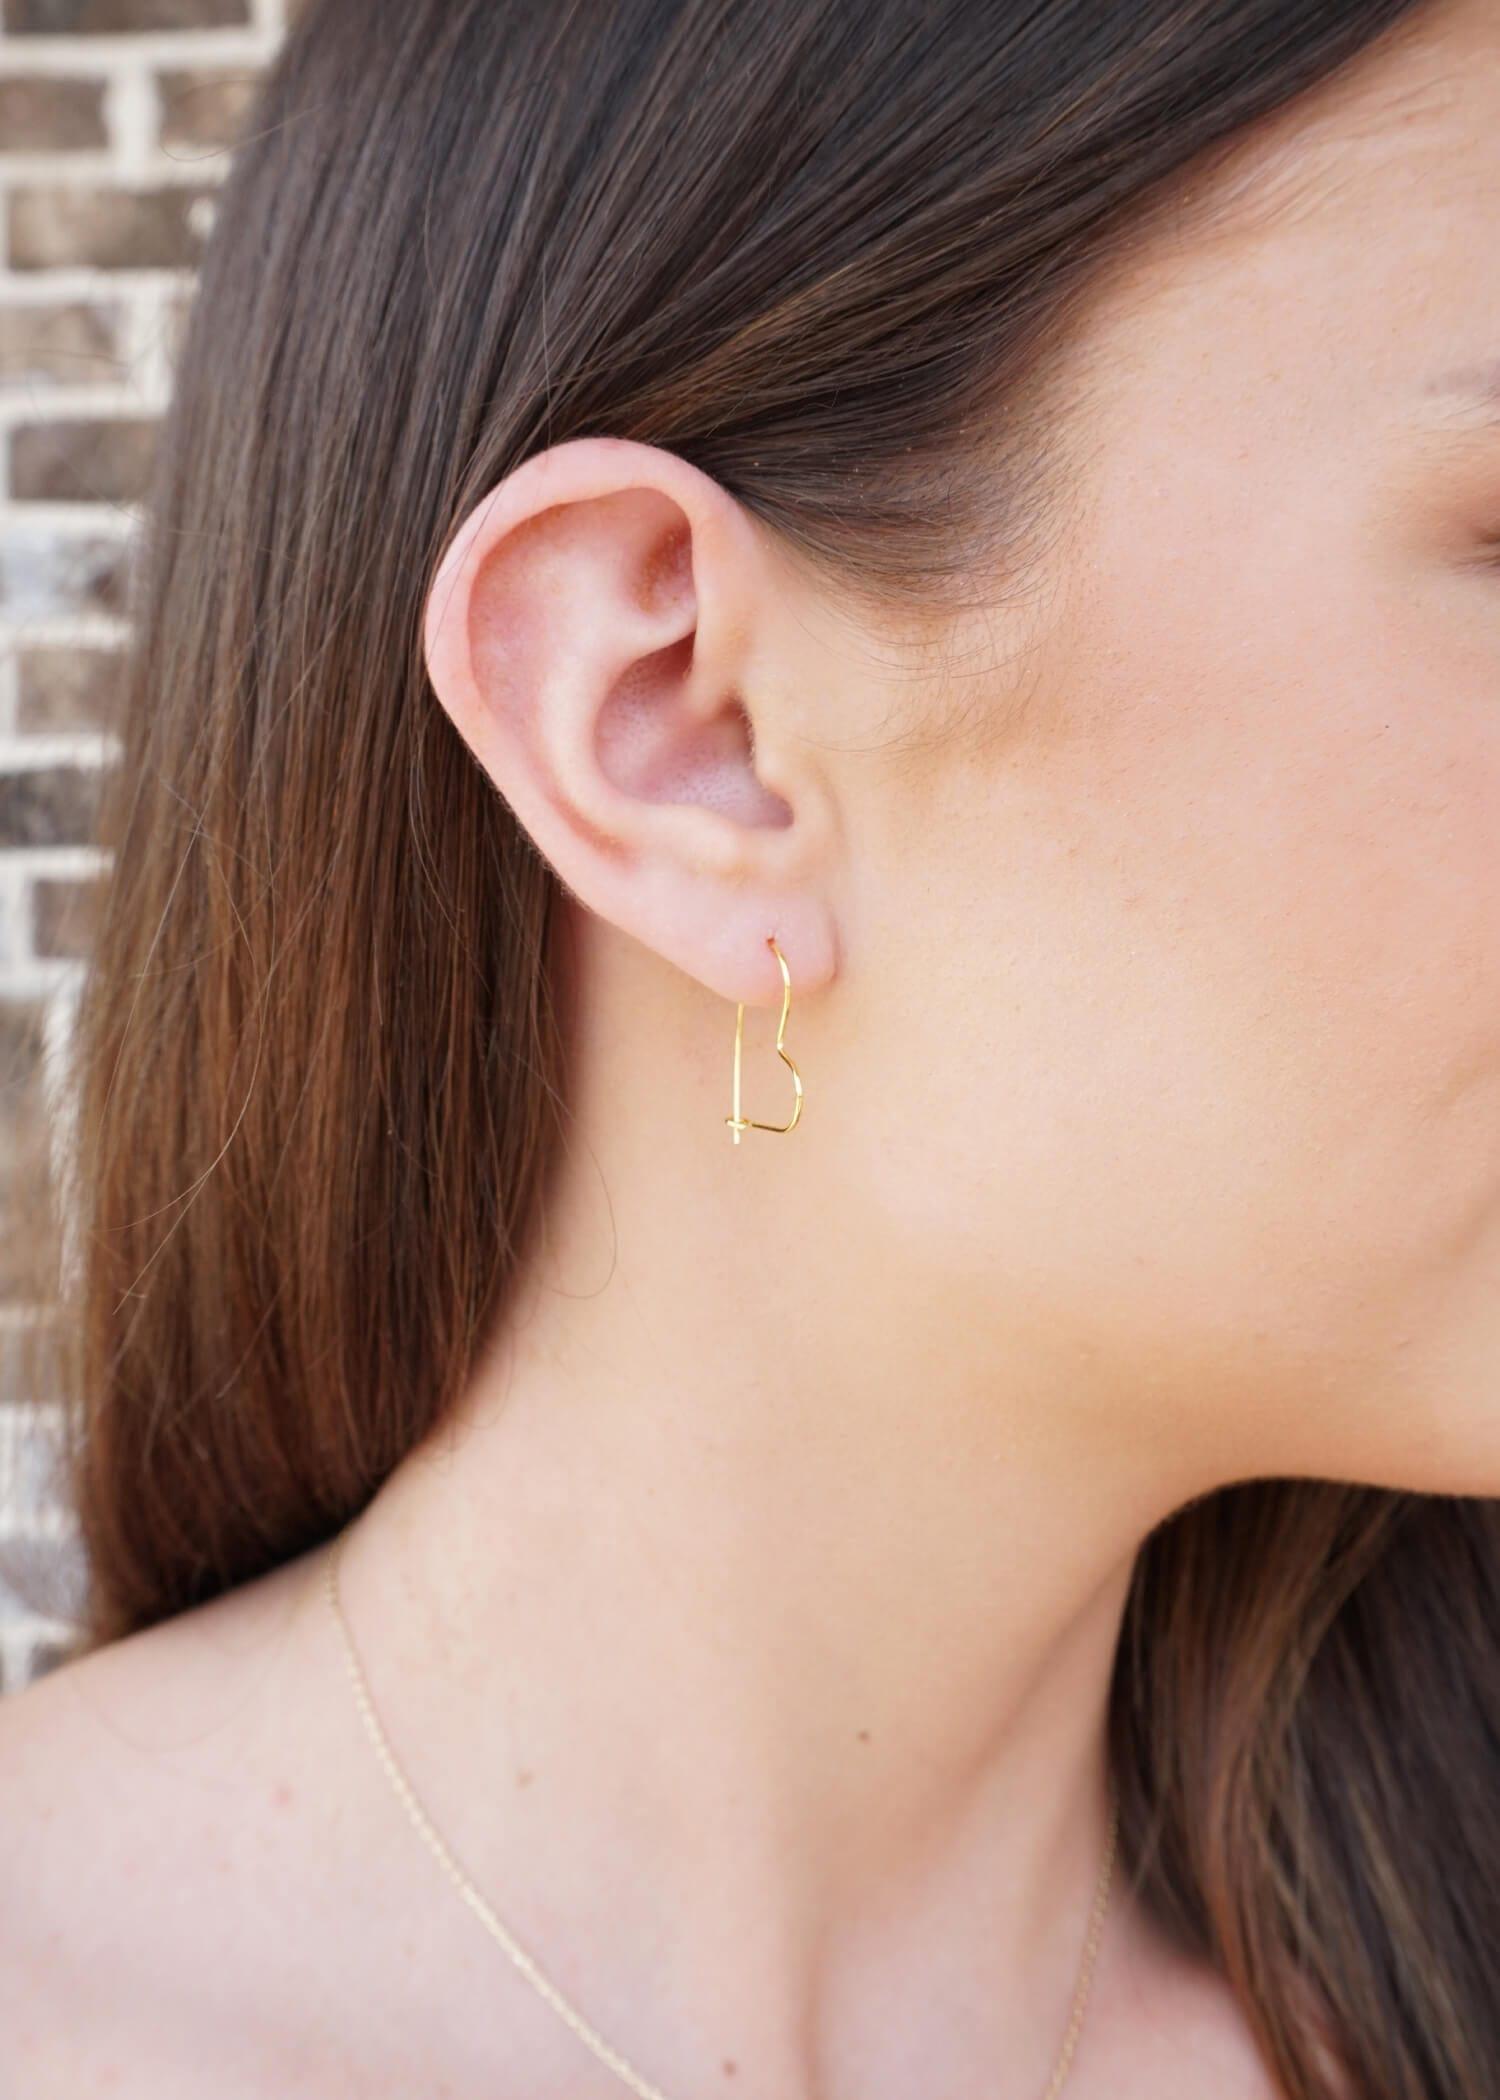 14kt Gold Heart Hoop Earrings -kids earrings